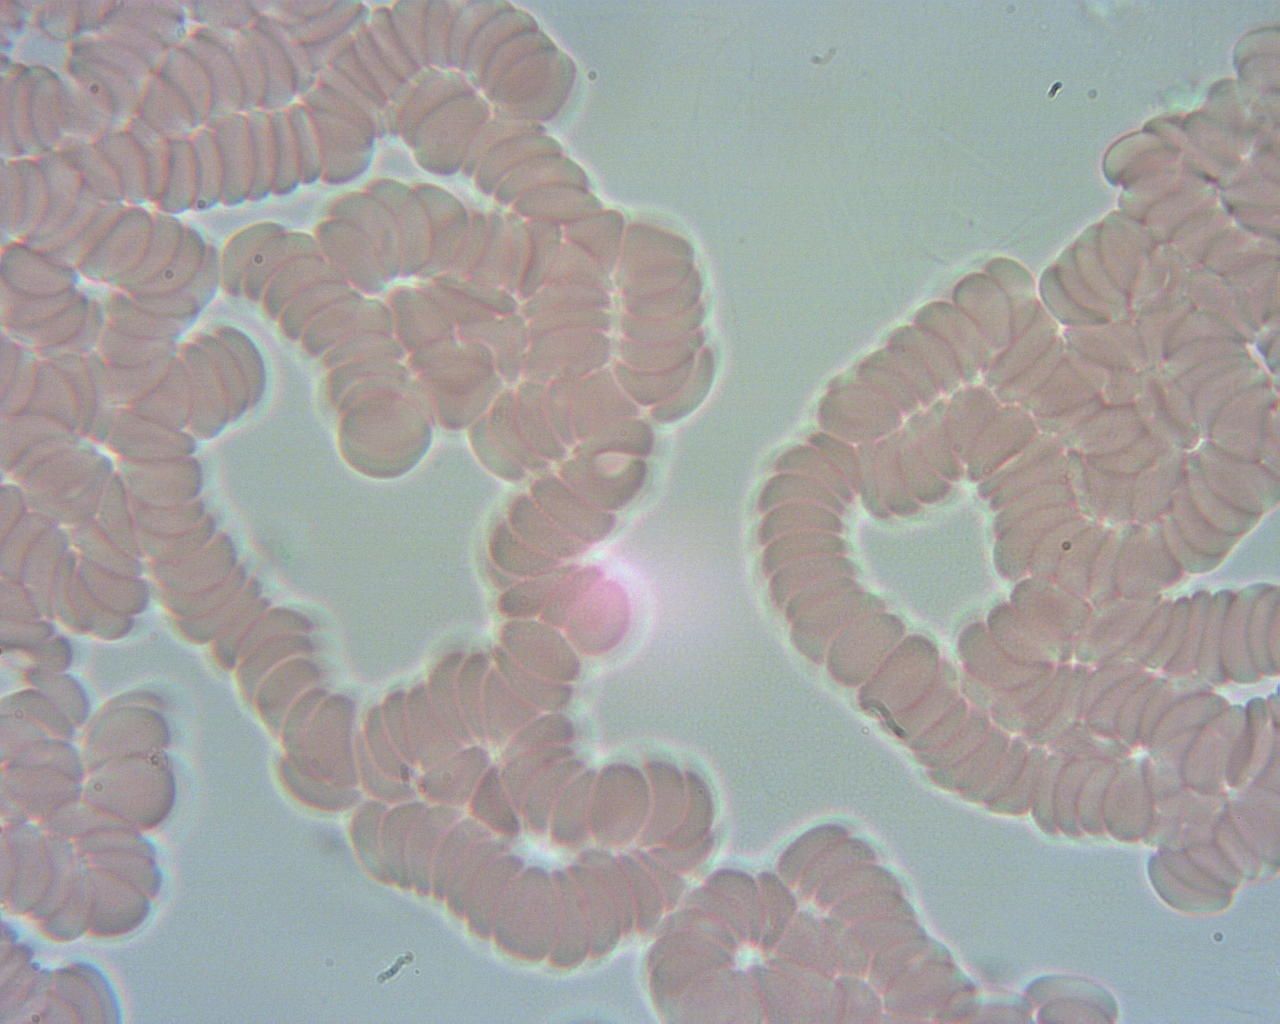 Obraz spod mikroskopu, widać krwinki czerwone połączone w rulony jak makarony. 